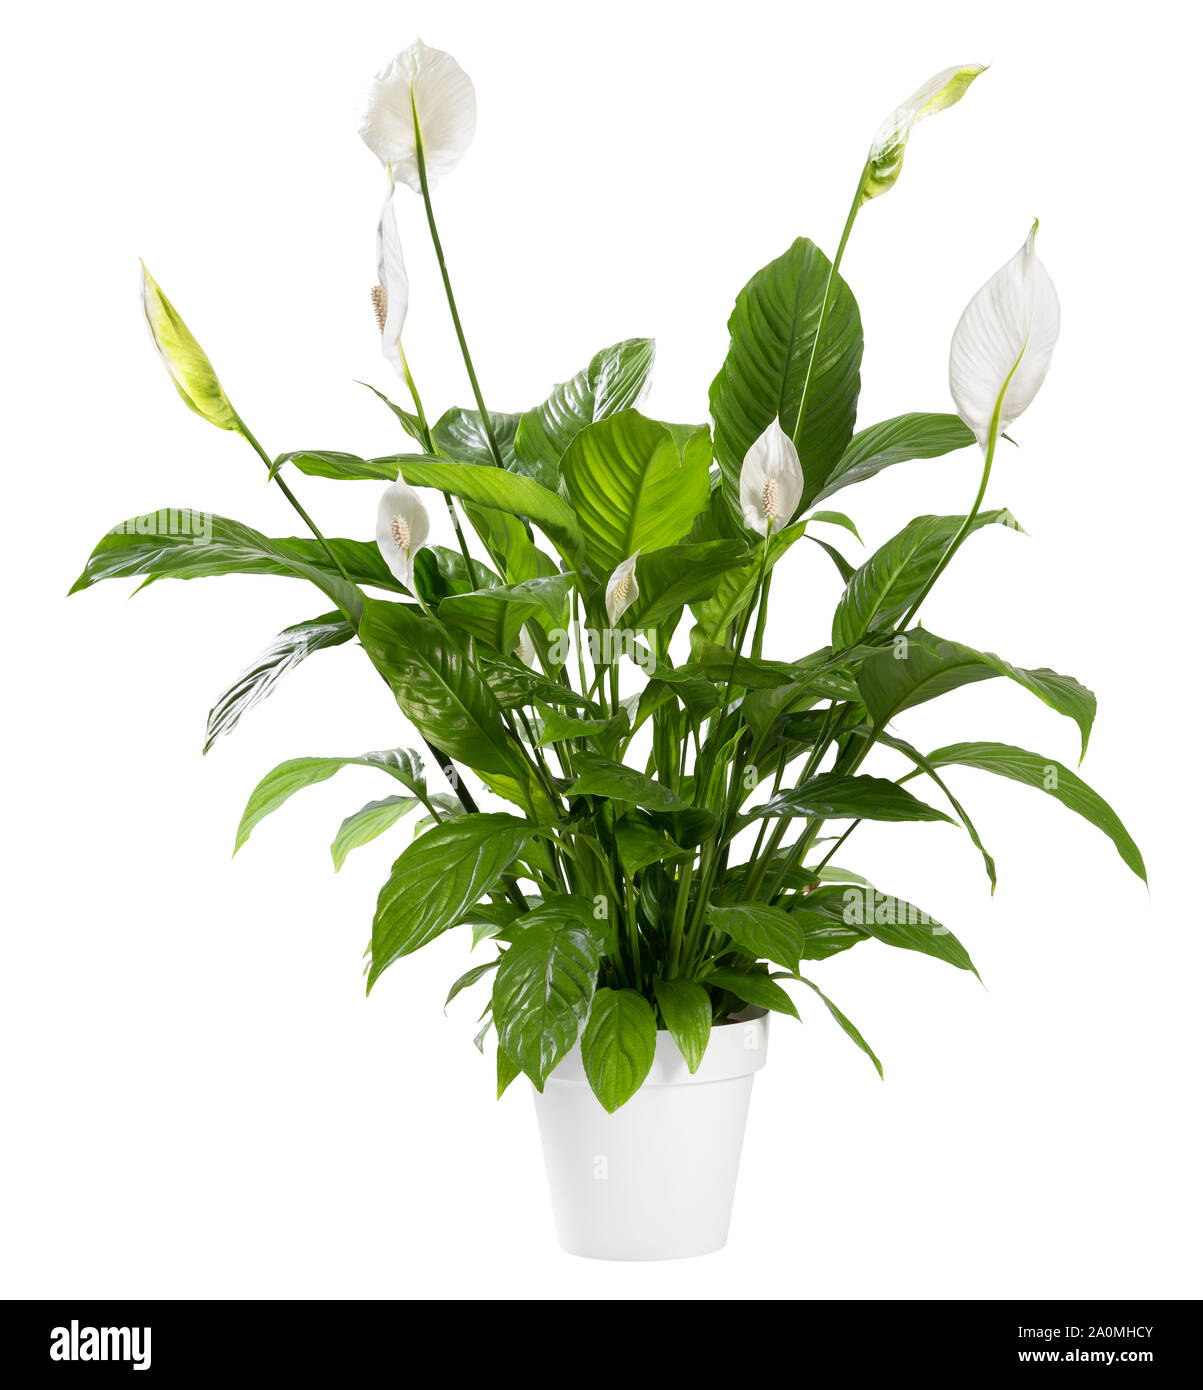 Potted Spathiphyllum pianta con delicati fiori bianchi con elementi ornamentali spathes noto anche come il giglio di pace isolate su sfondo bianco Foto Stock